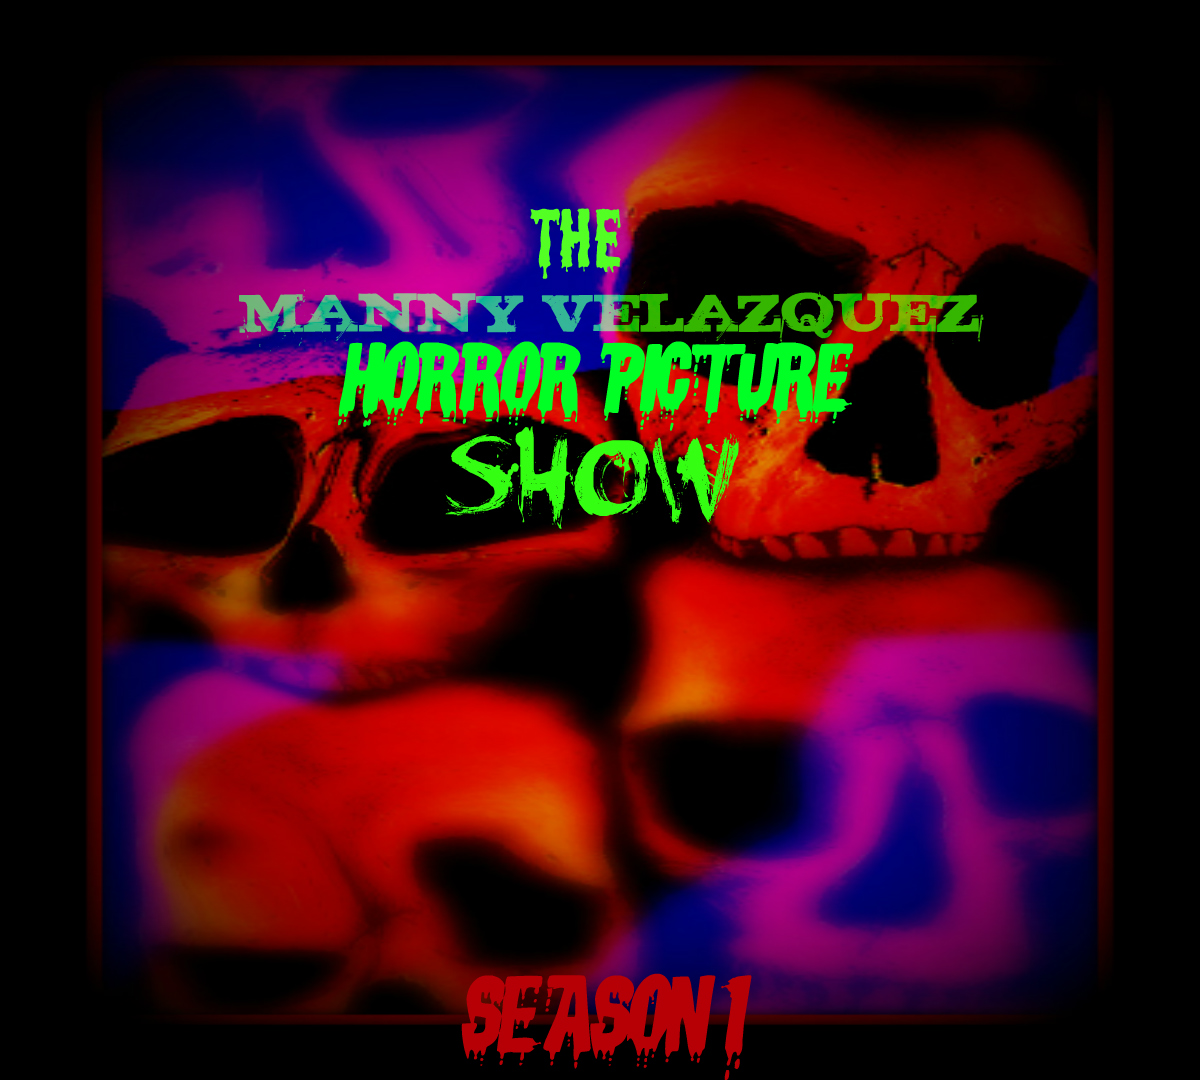 The Manny Velazquez Horror Picture Show